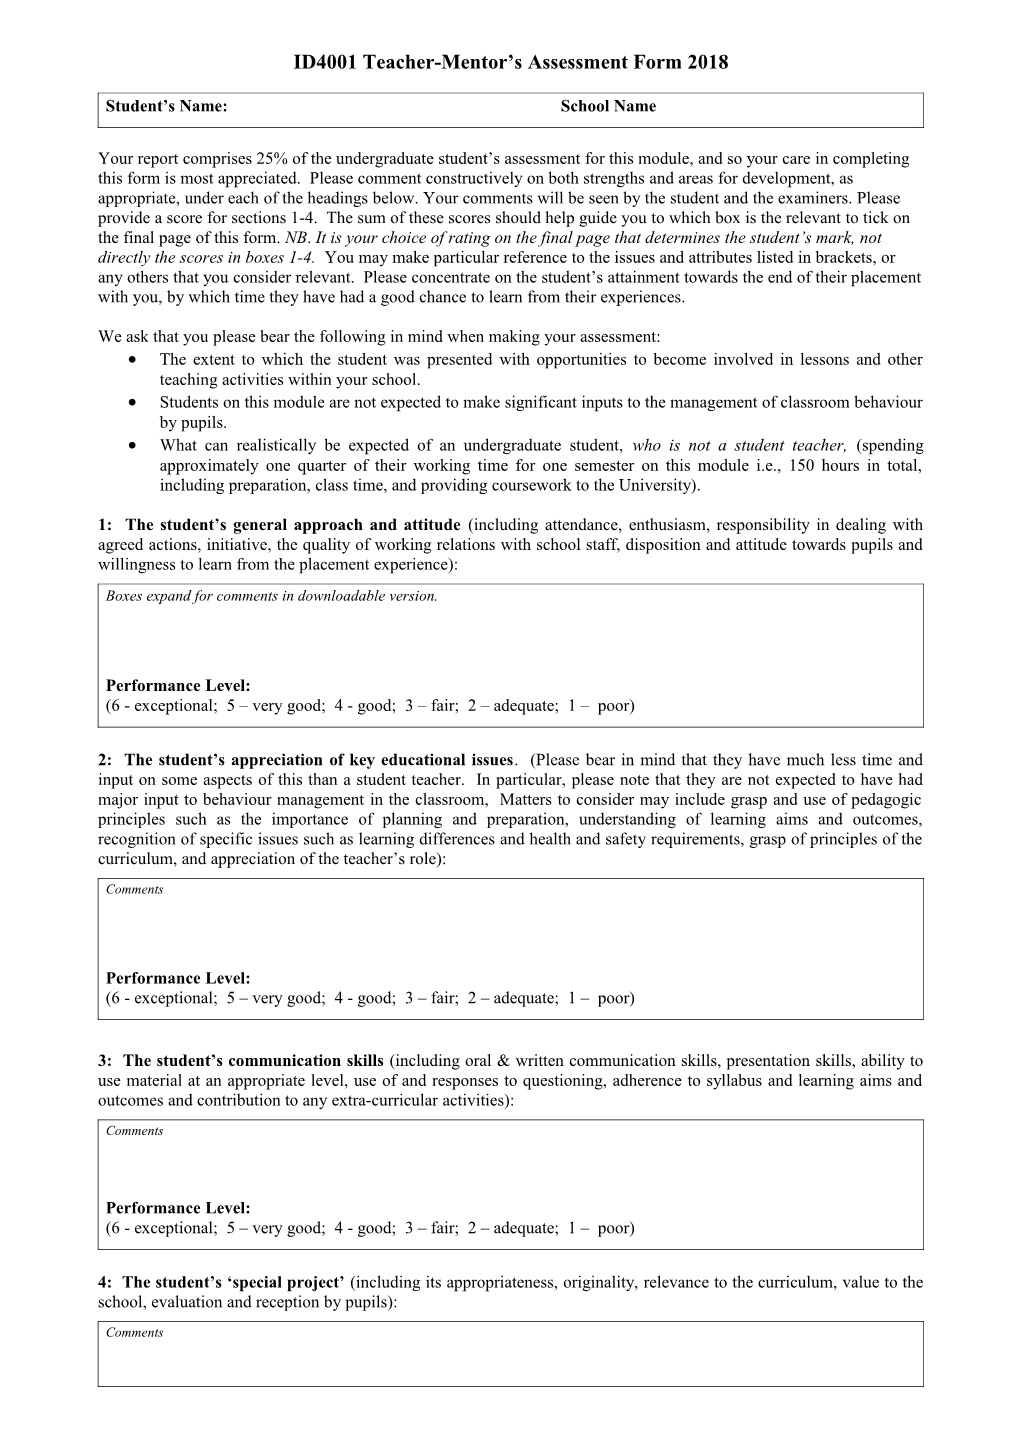 ID4001 Teacher-Mentor S Assessment Form 2018 BS1